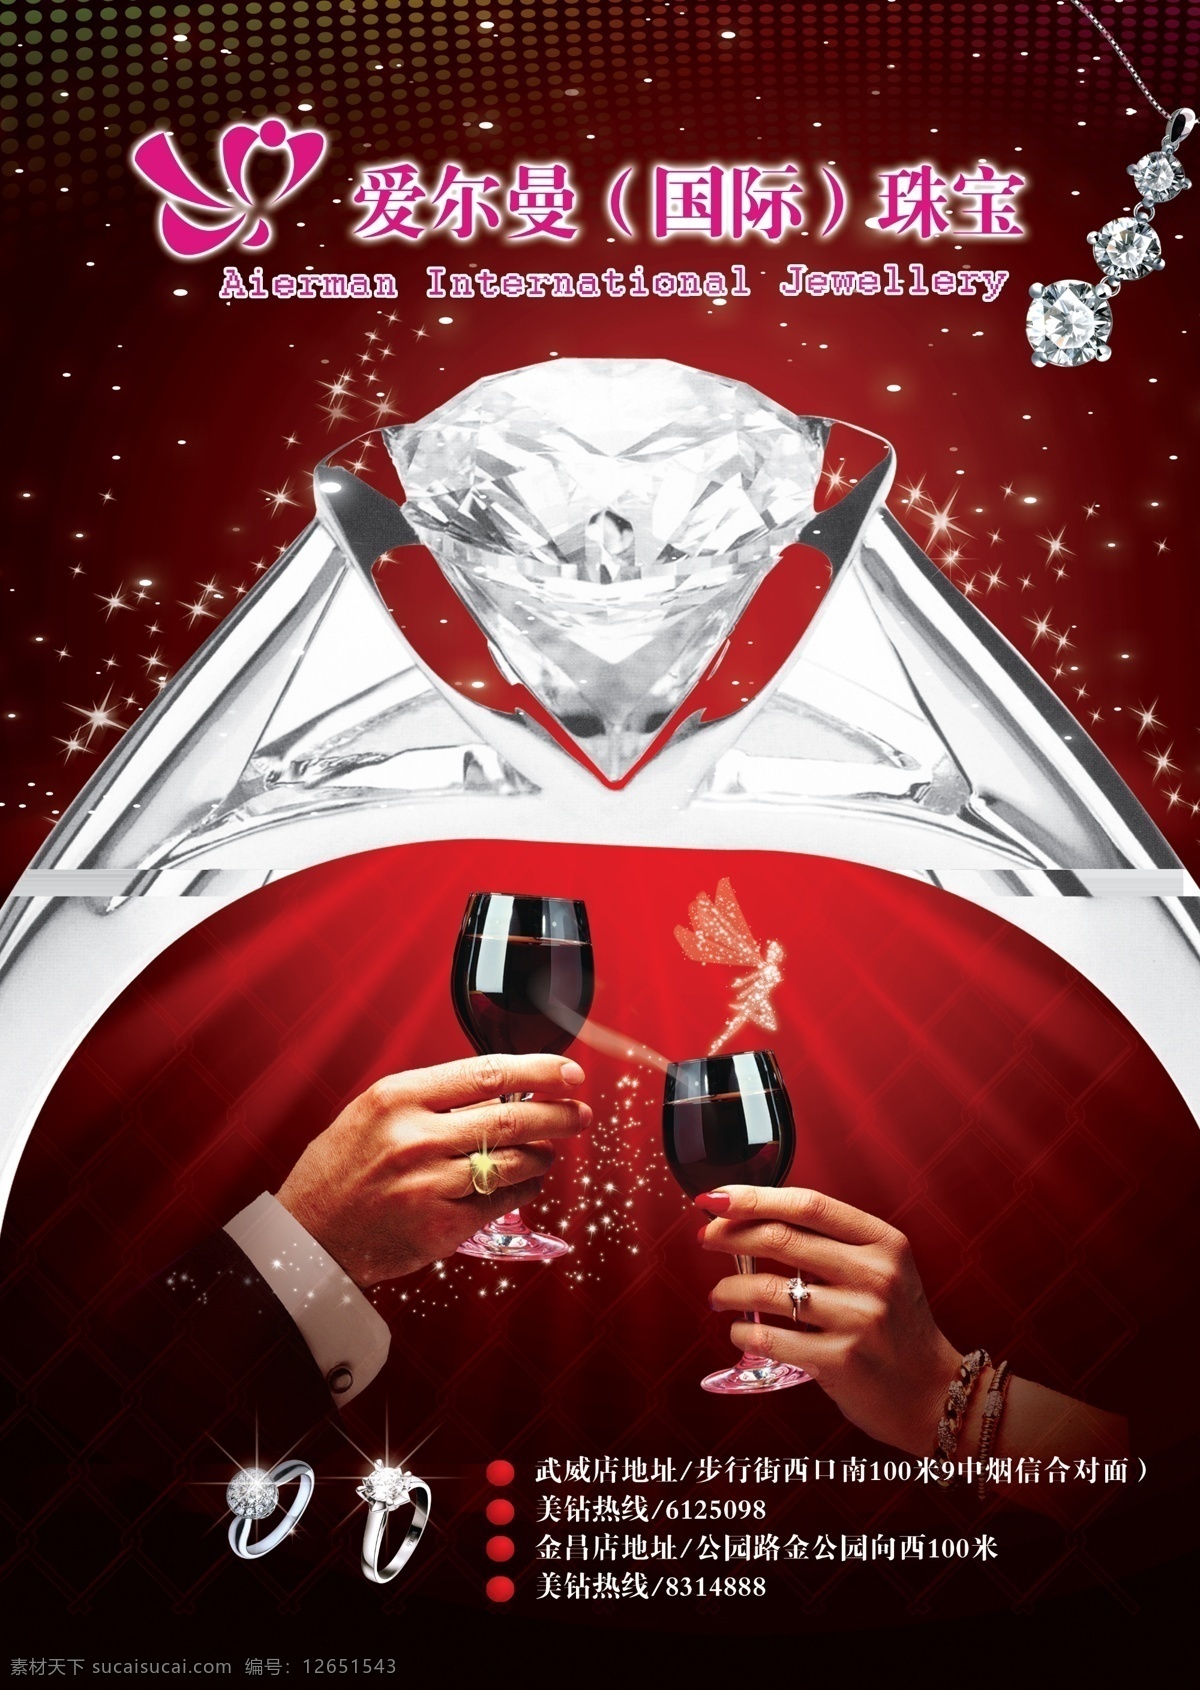 爱 尔曼 珠宝商 城 psd素材 杯子 创意设计 分层素材 商城海报 爱尔曼 星光珠宝 共享未来 psd源文件